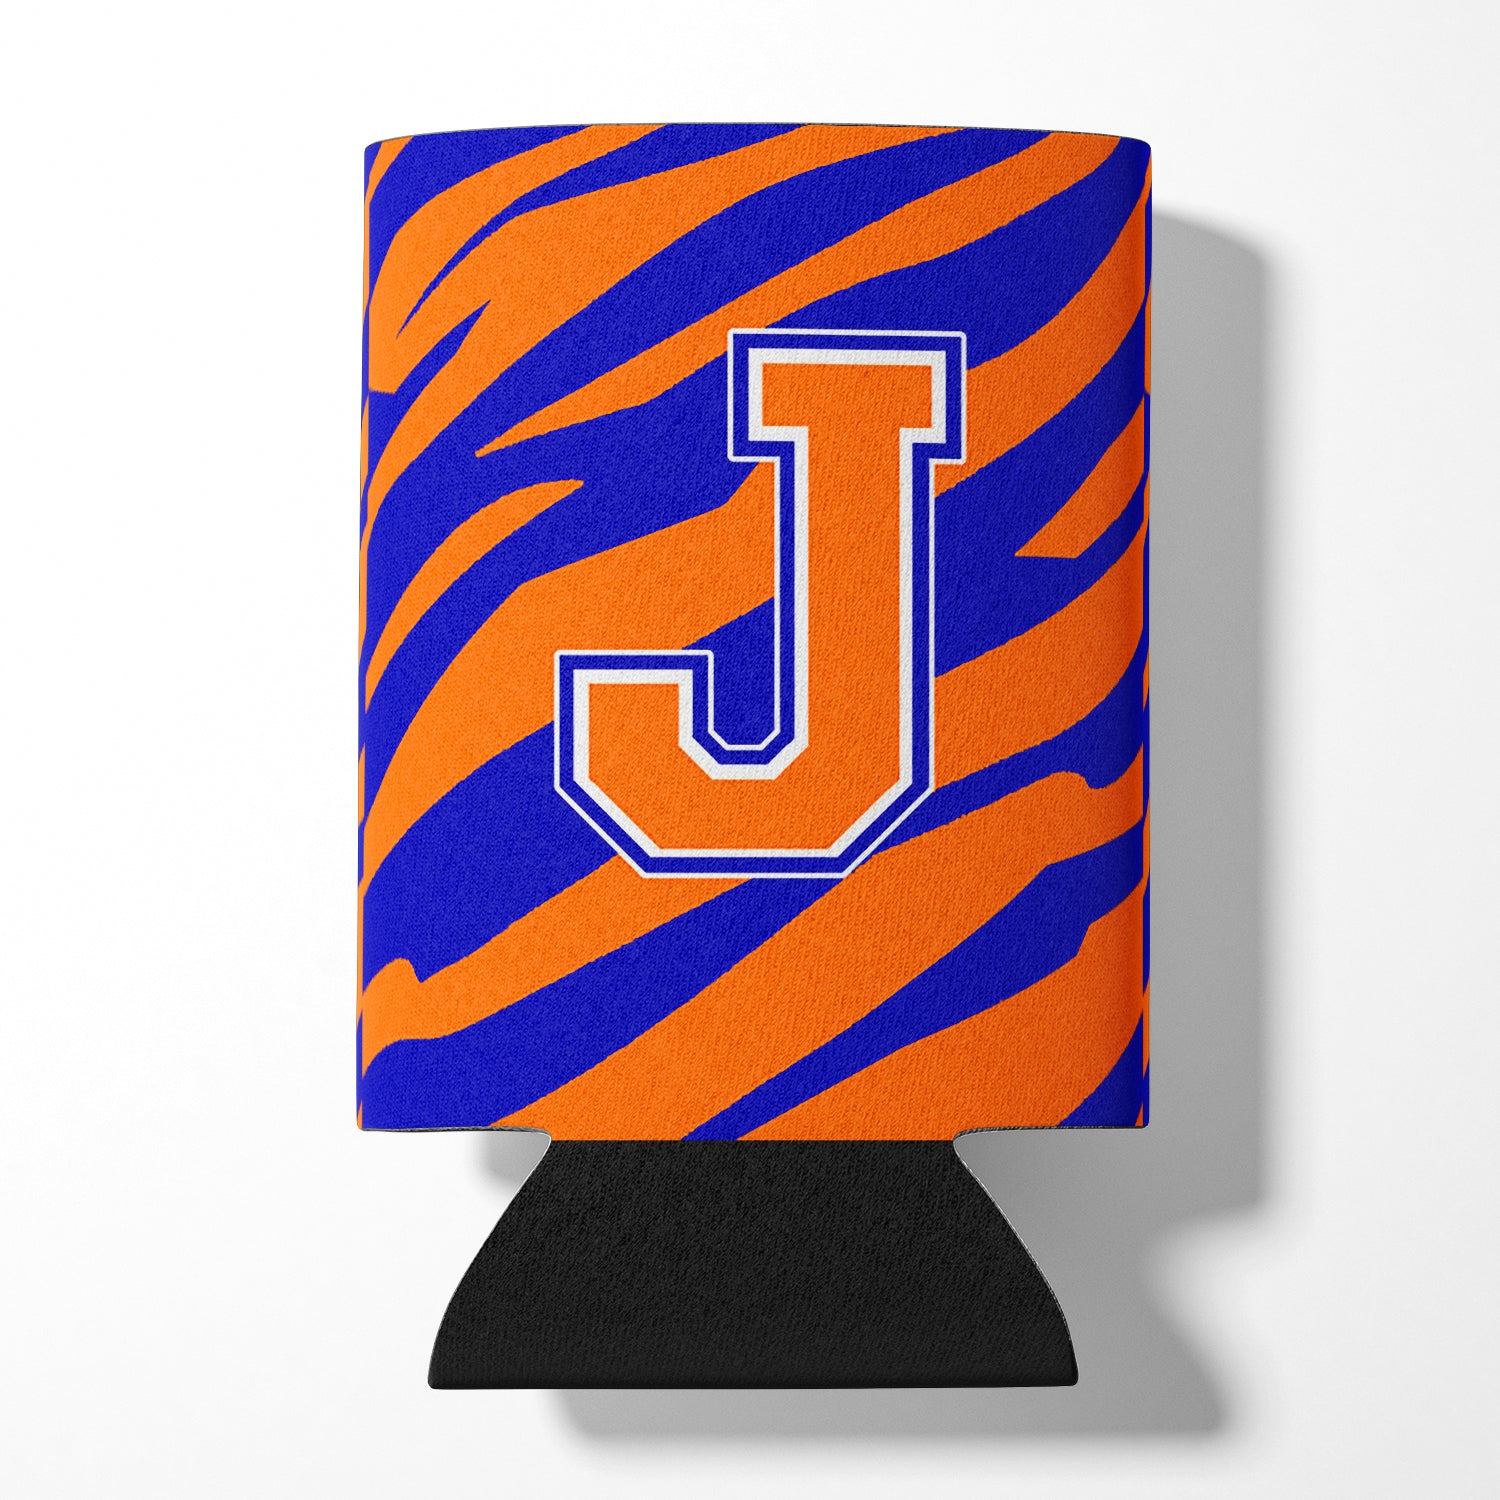 Lettre J initiale monogramme tigre rayure bleu orange canette ou bouteille boisson isolant Hugger